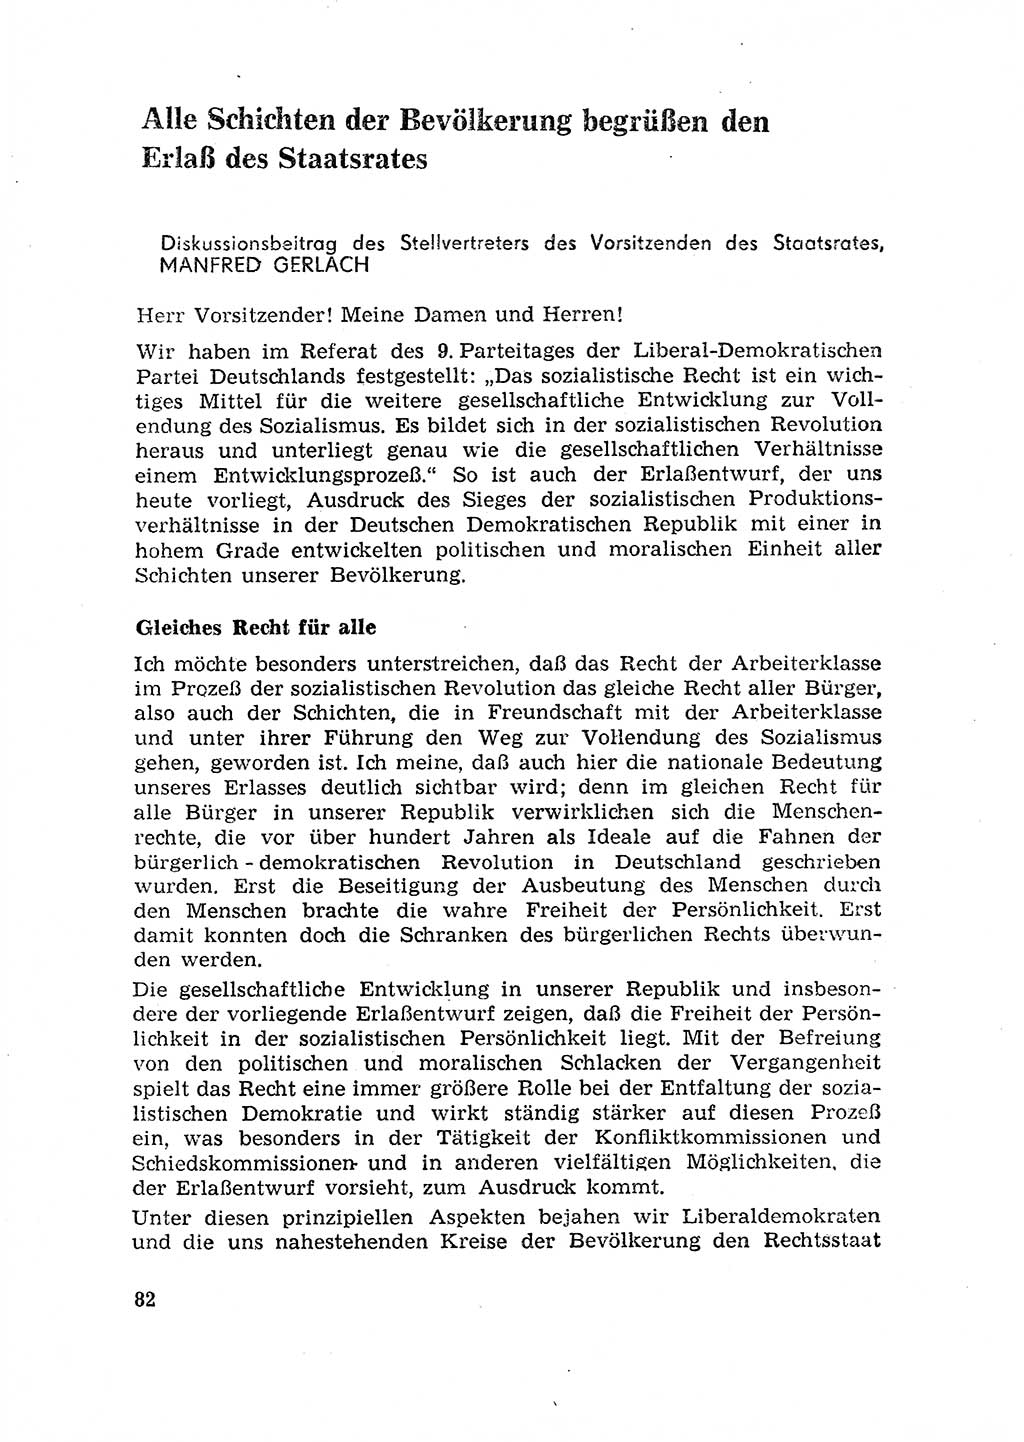 Rechtspflegeerlaß [Deutsche Demokratische Republik (DDR)] 1963, Seite 82 (R.-Pfl.-Erl. DDR 1963, S. 82)